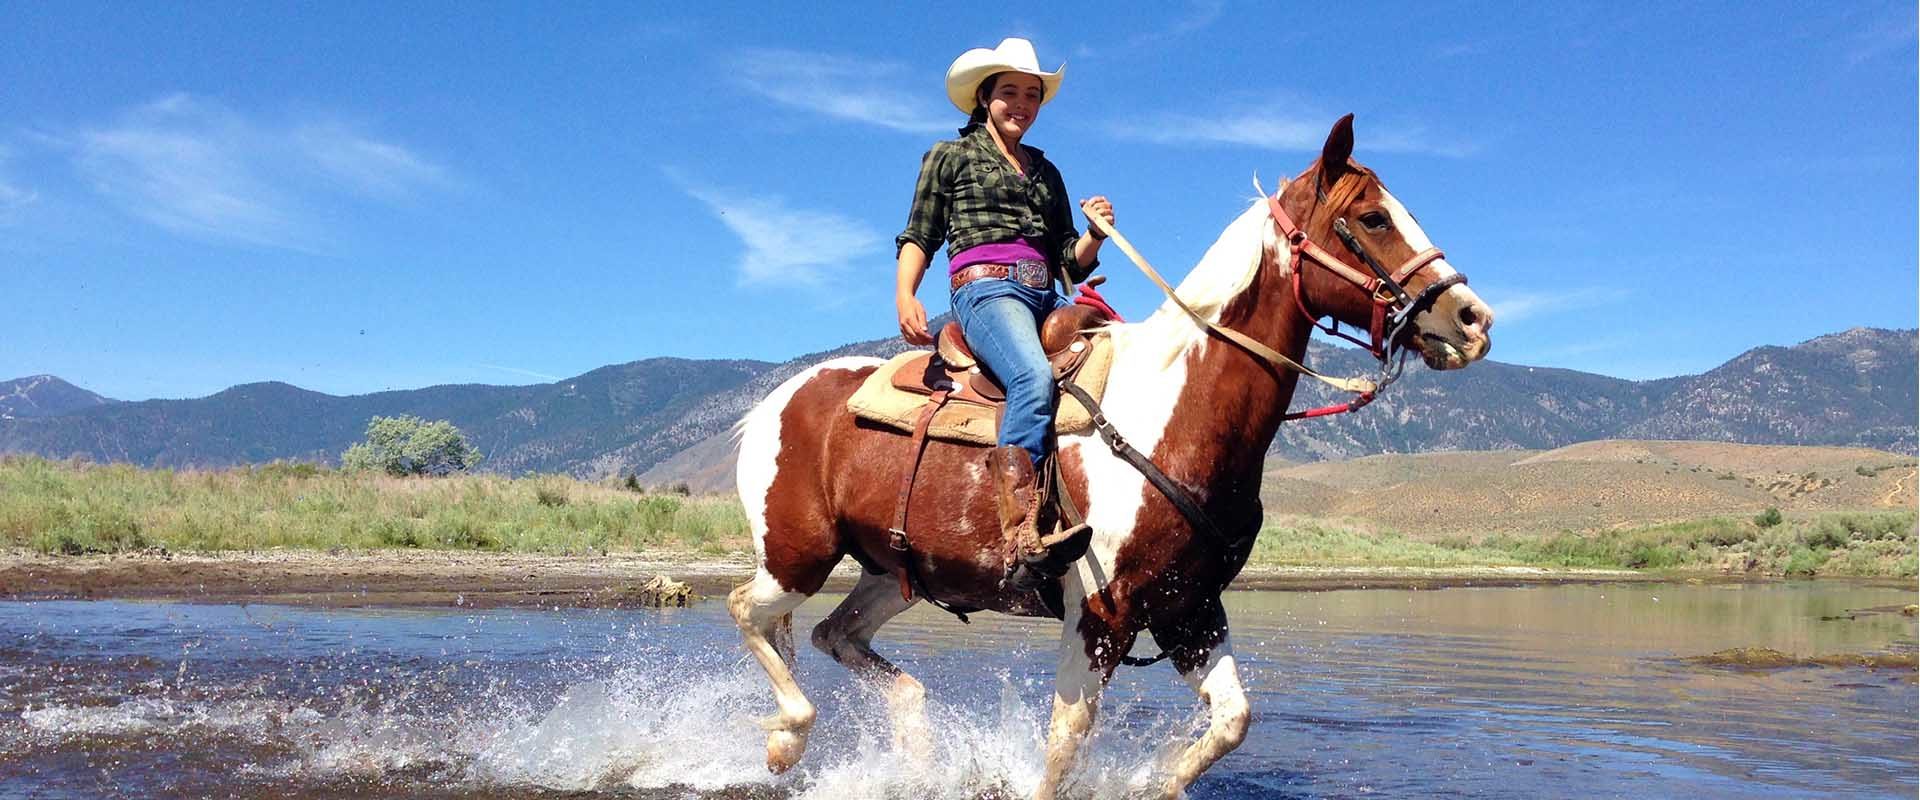 Smith Mountain Lake Horseback Riding Lesson